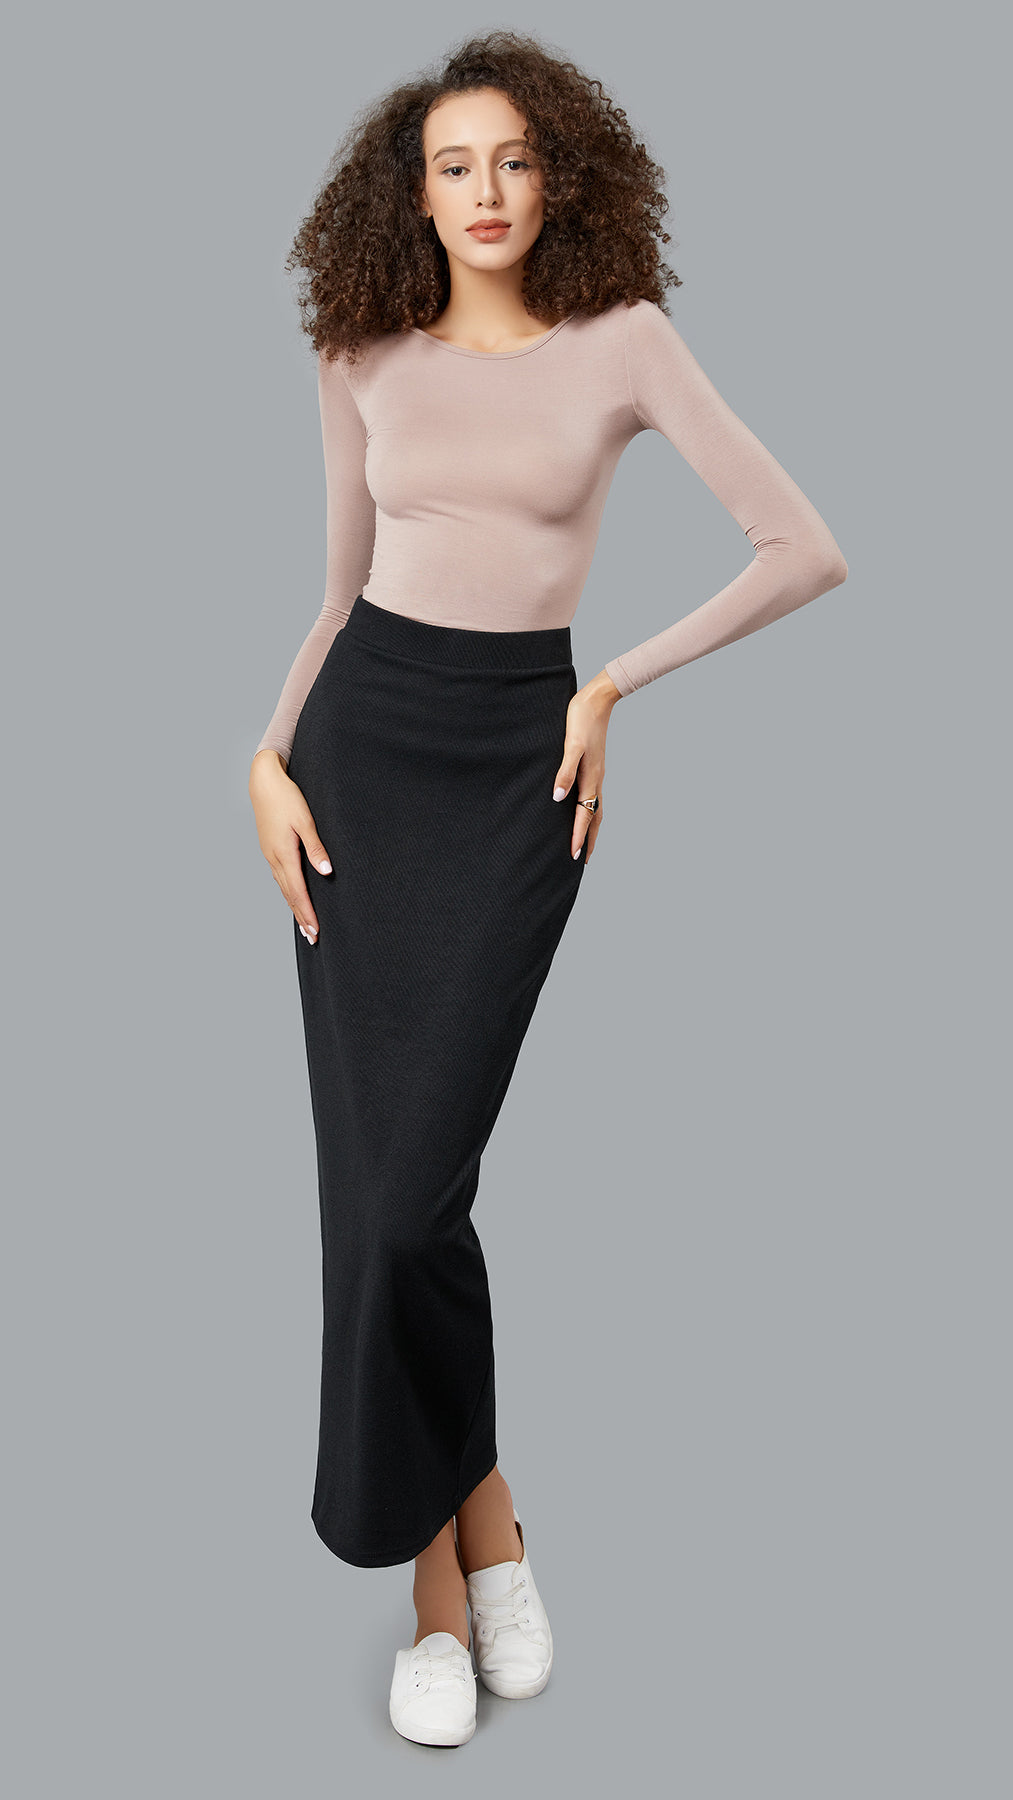 Modish Knit Skirt -  Modelle